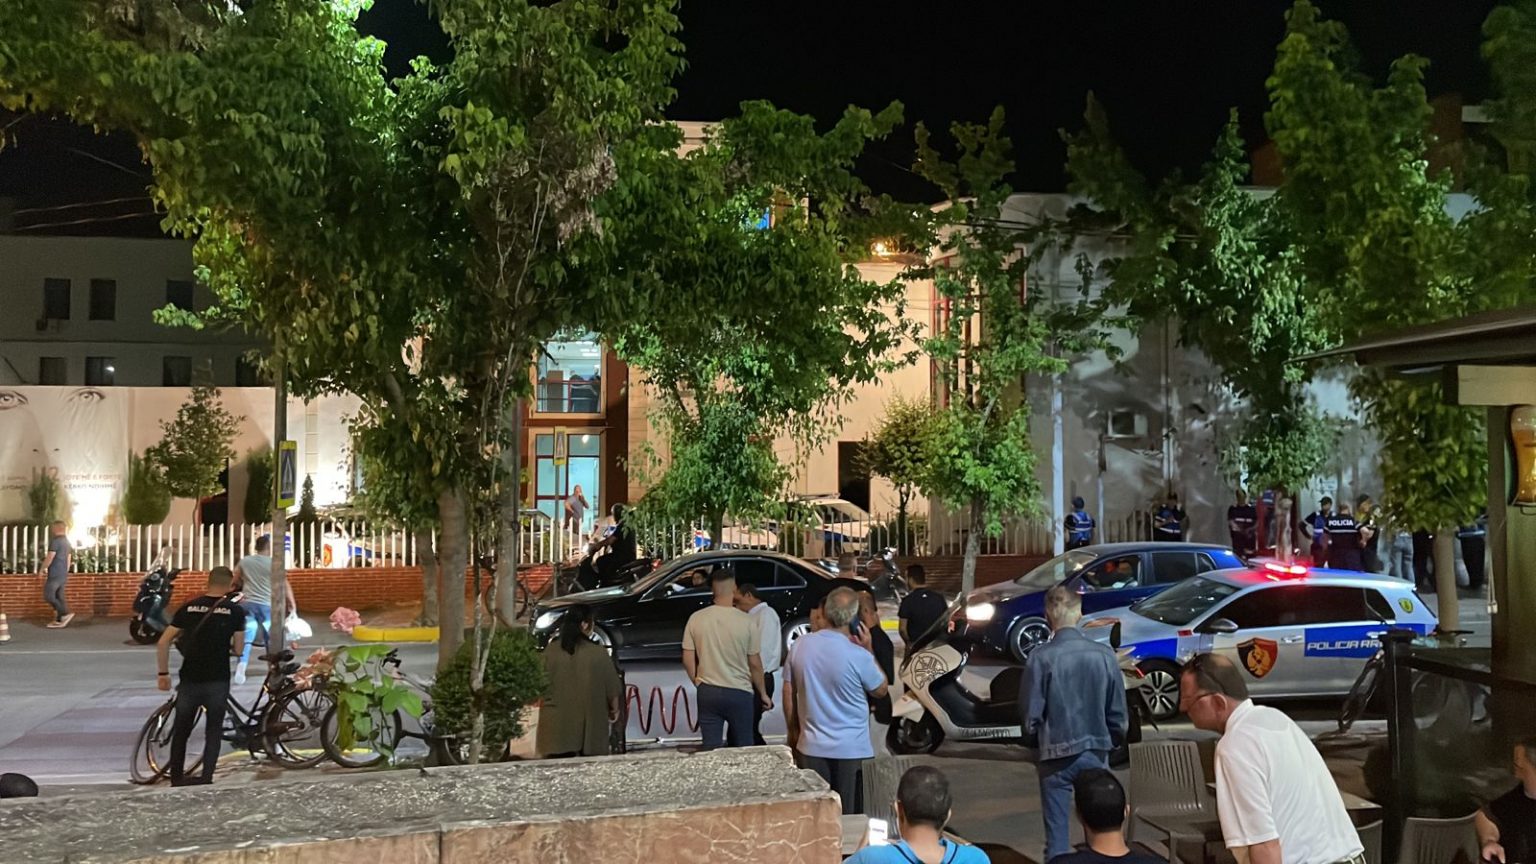 “Më tallte prej kohësh”, detaje nga vrasja e policit në Tiranë nga kolegu 25-vjeçar